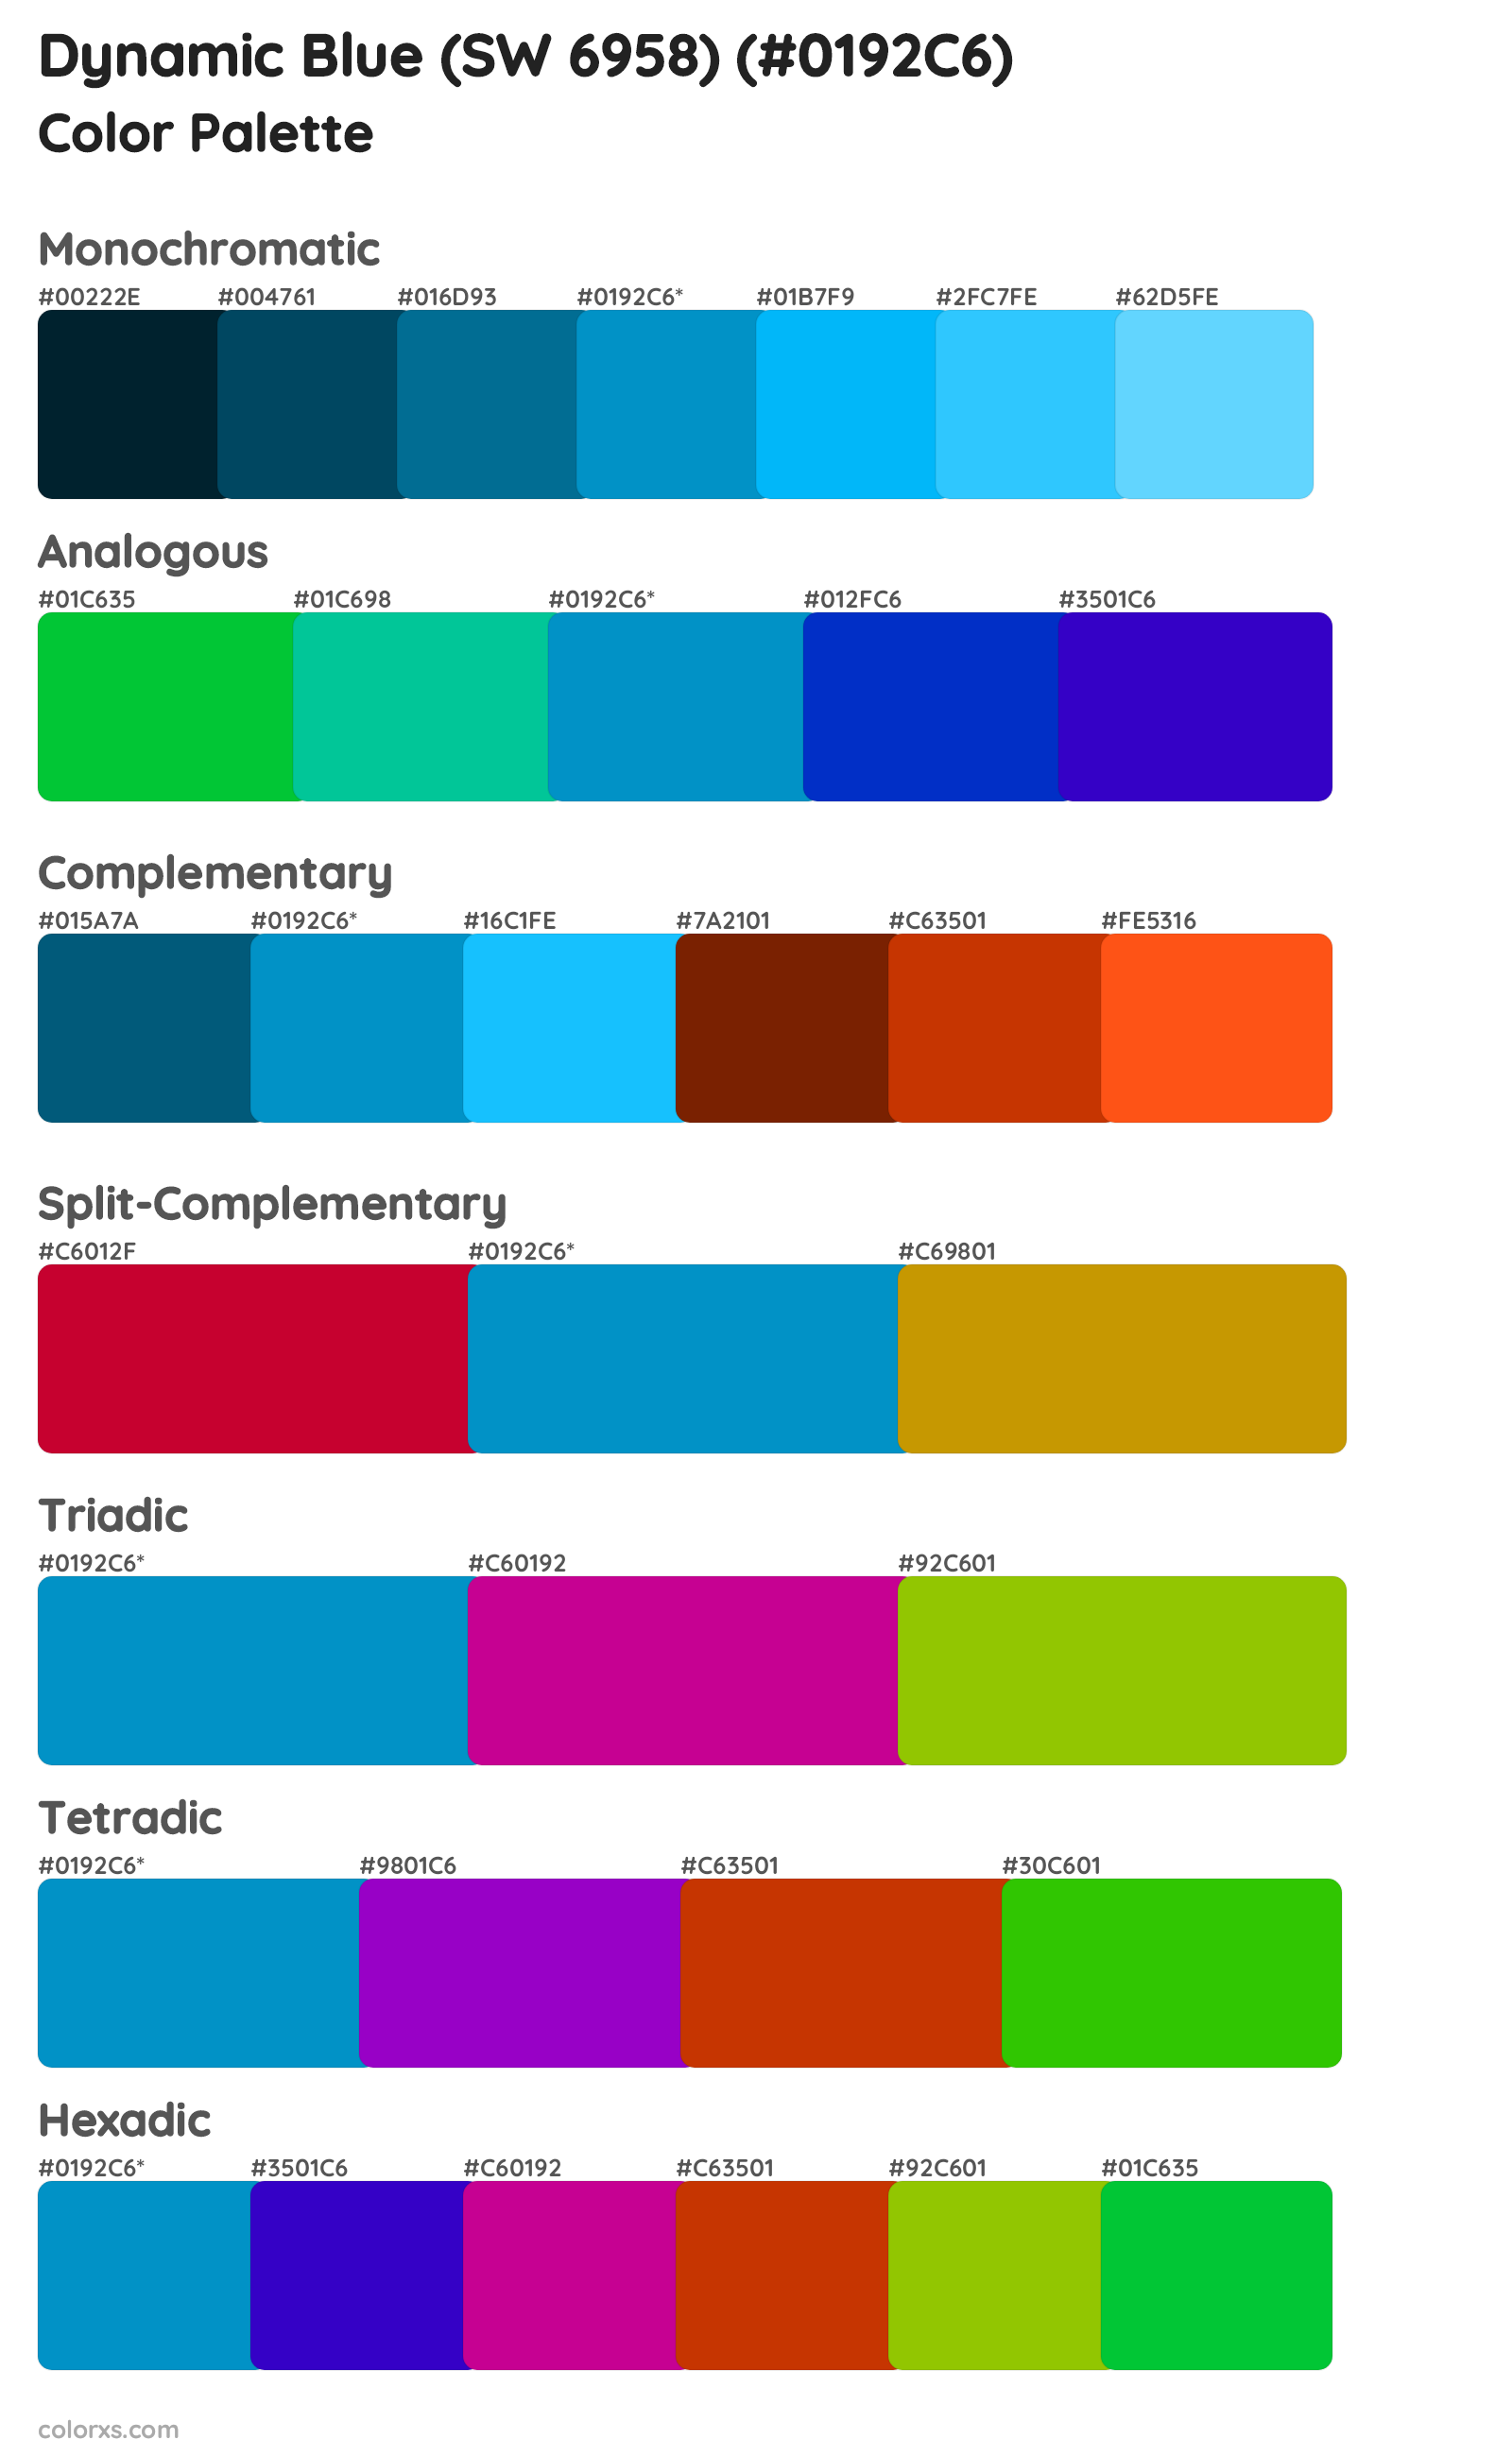 Dynamic Blue (SW 6958) Color Scheme Palettes